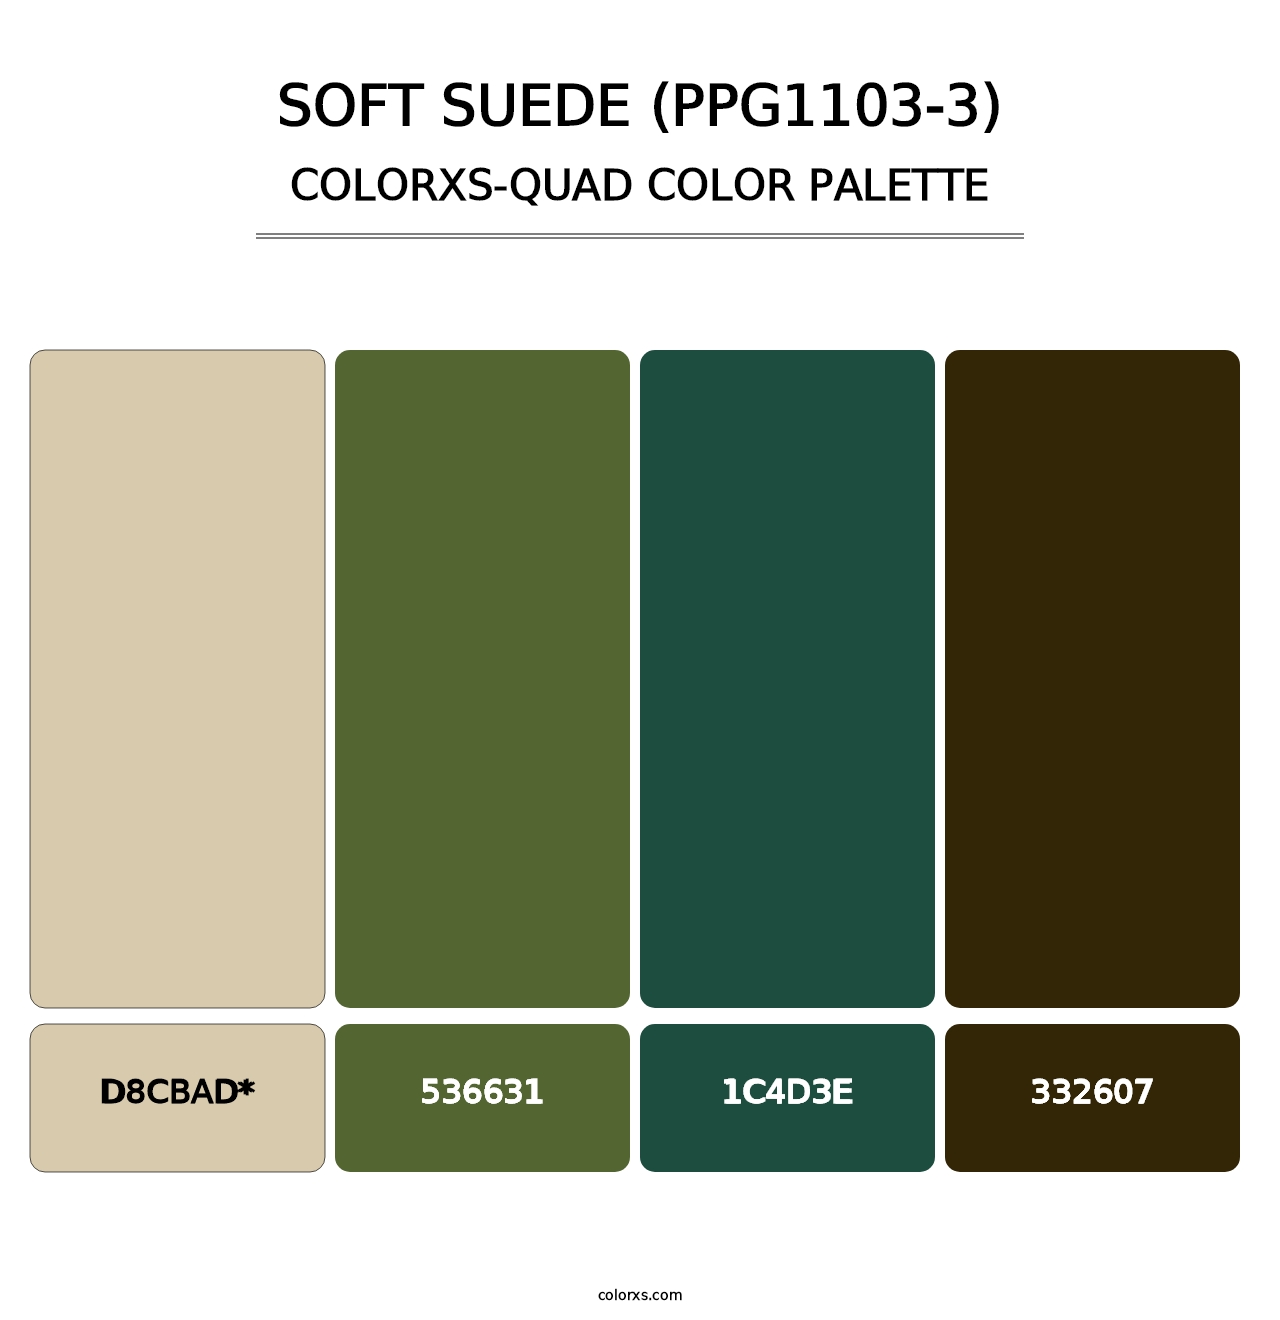 Soft Suede (PPG1103-3) - Colorxs Quad Palette